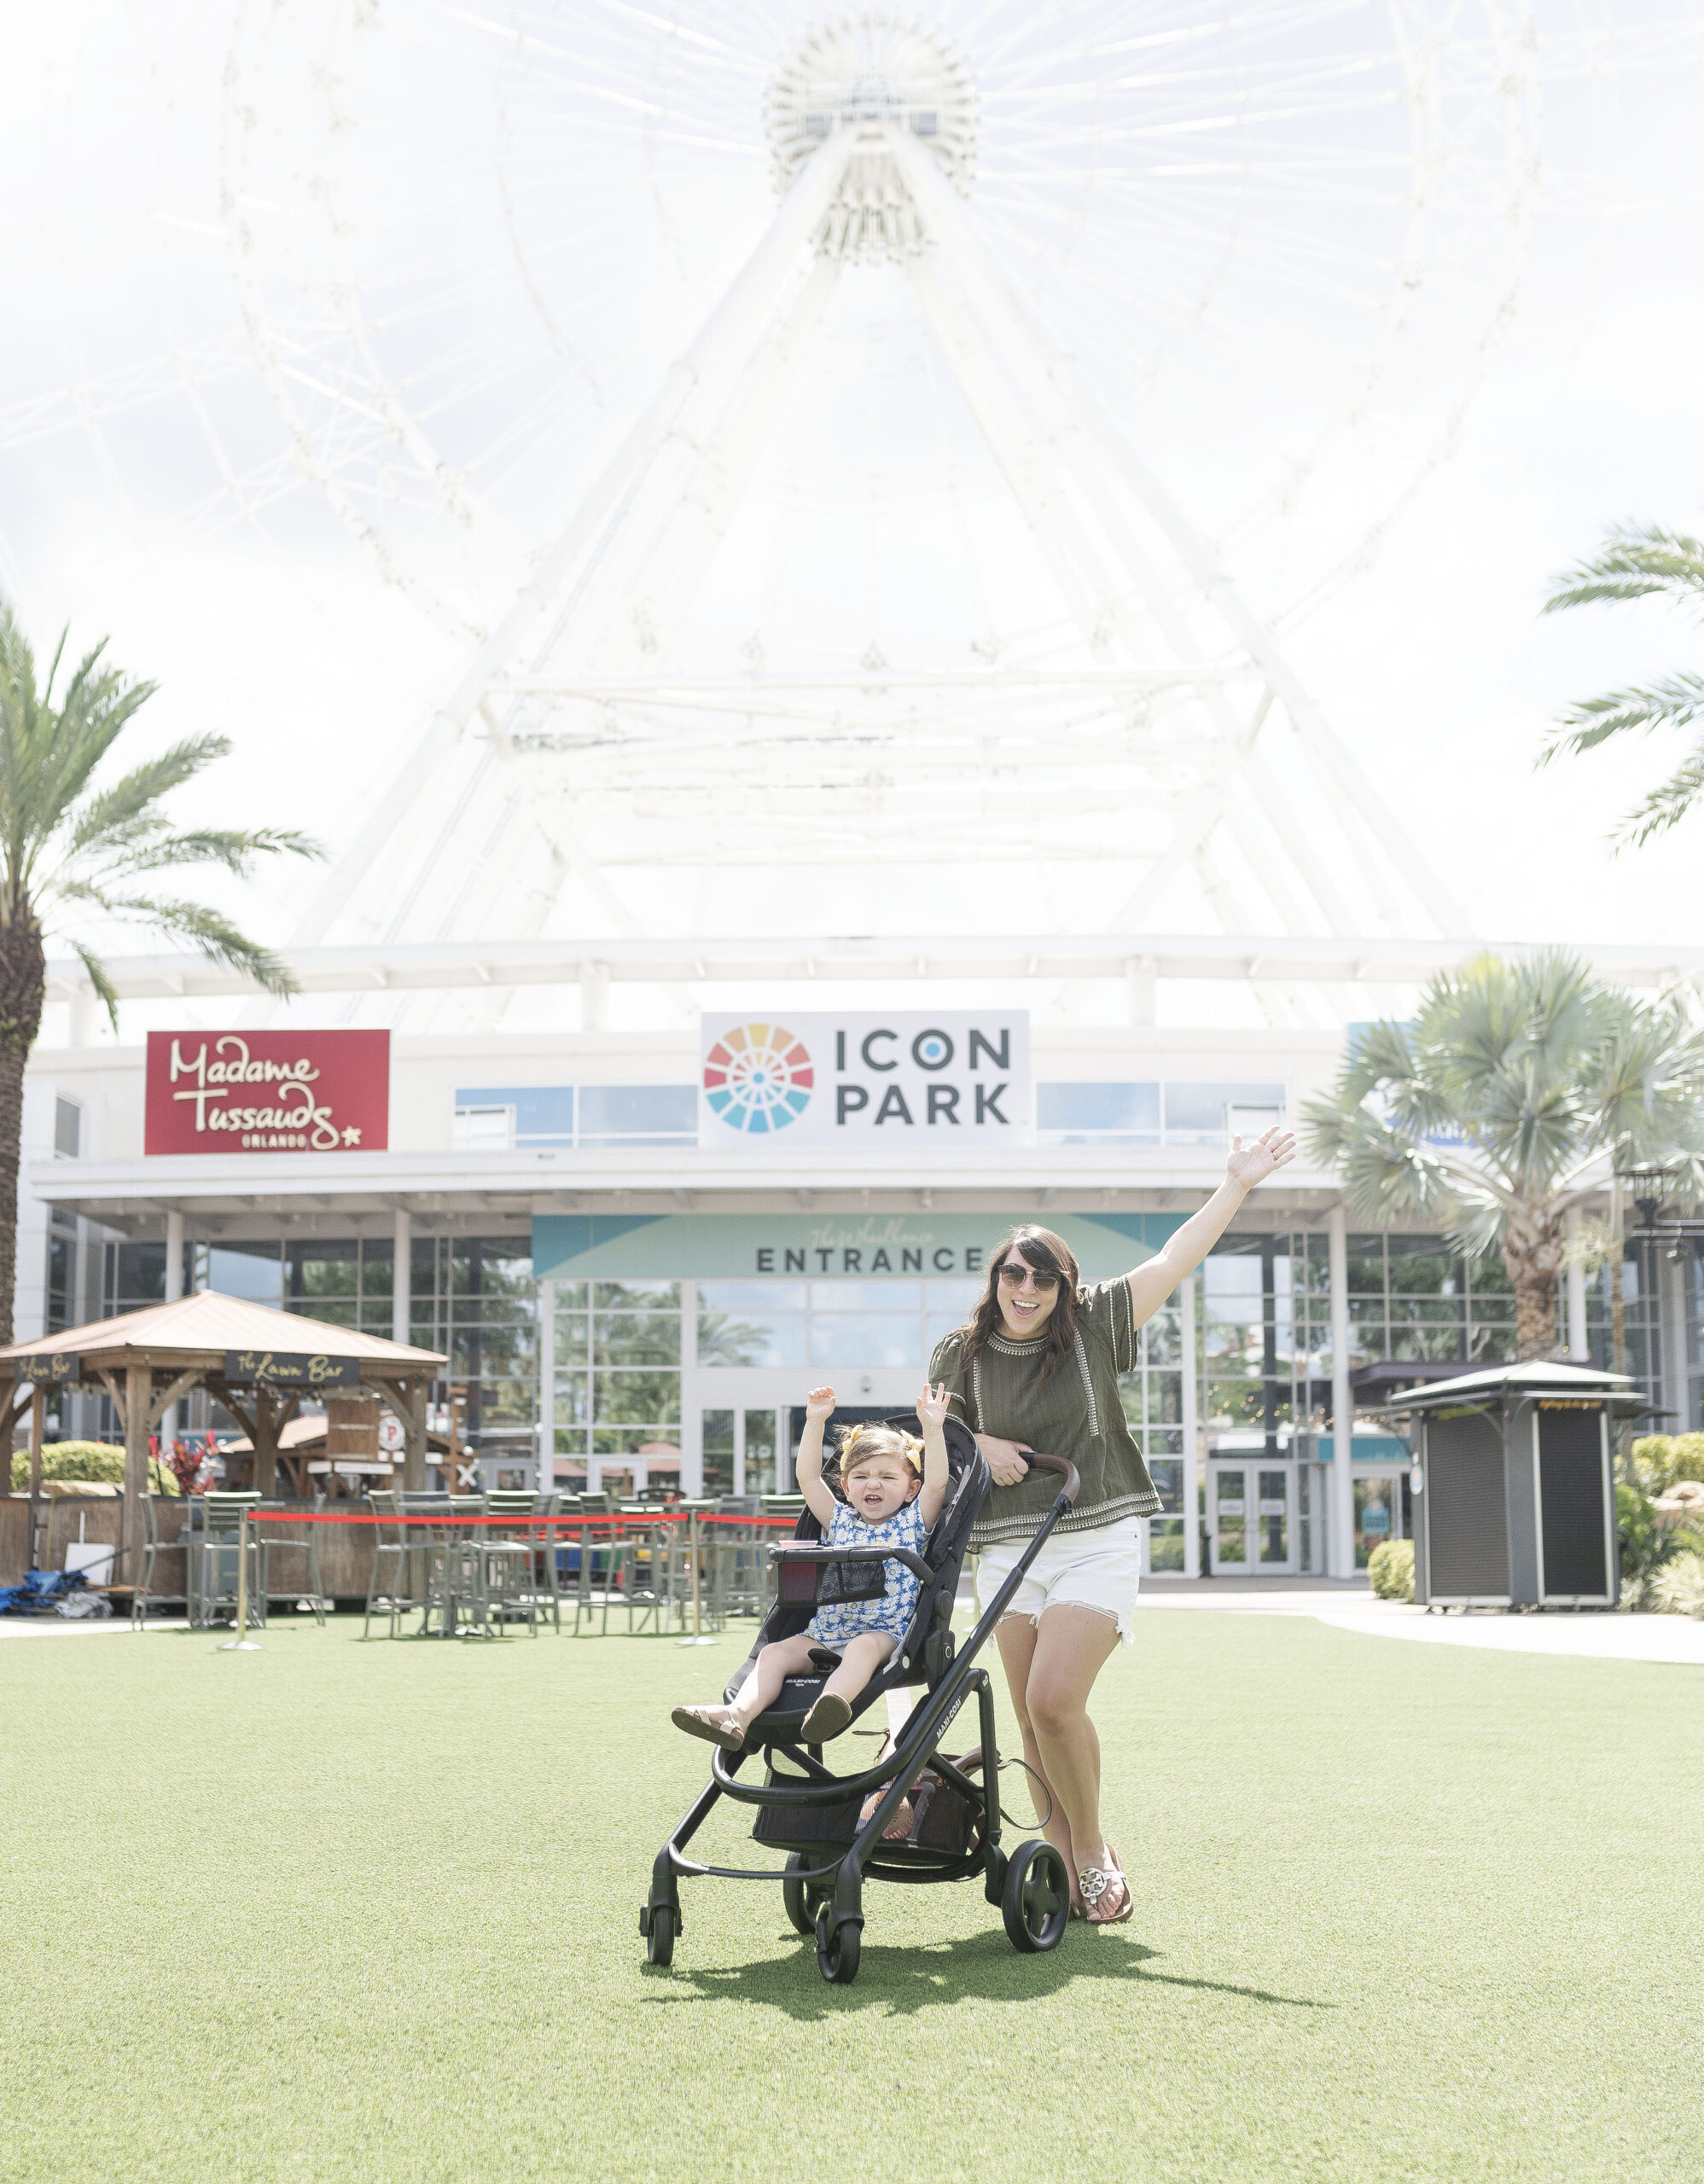 ICON Park Orlando